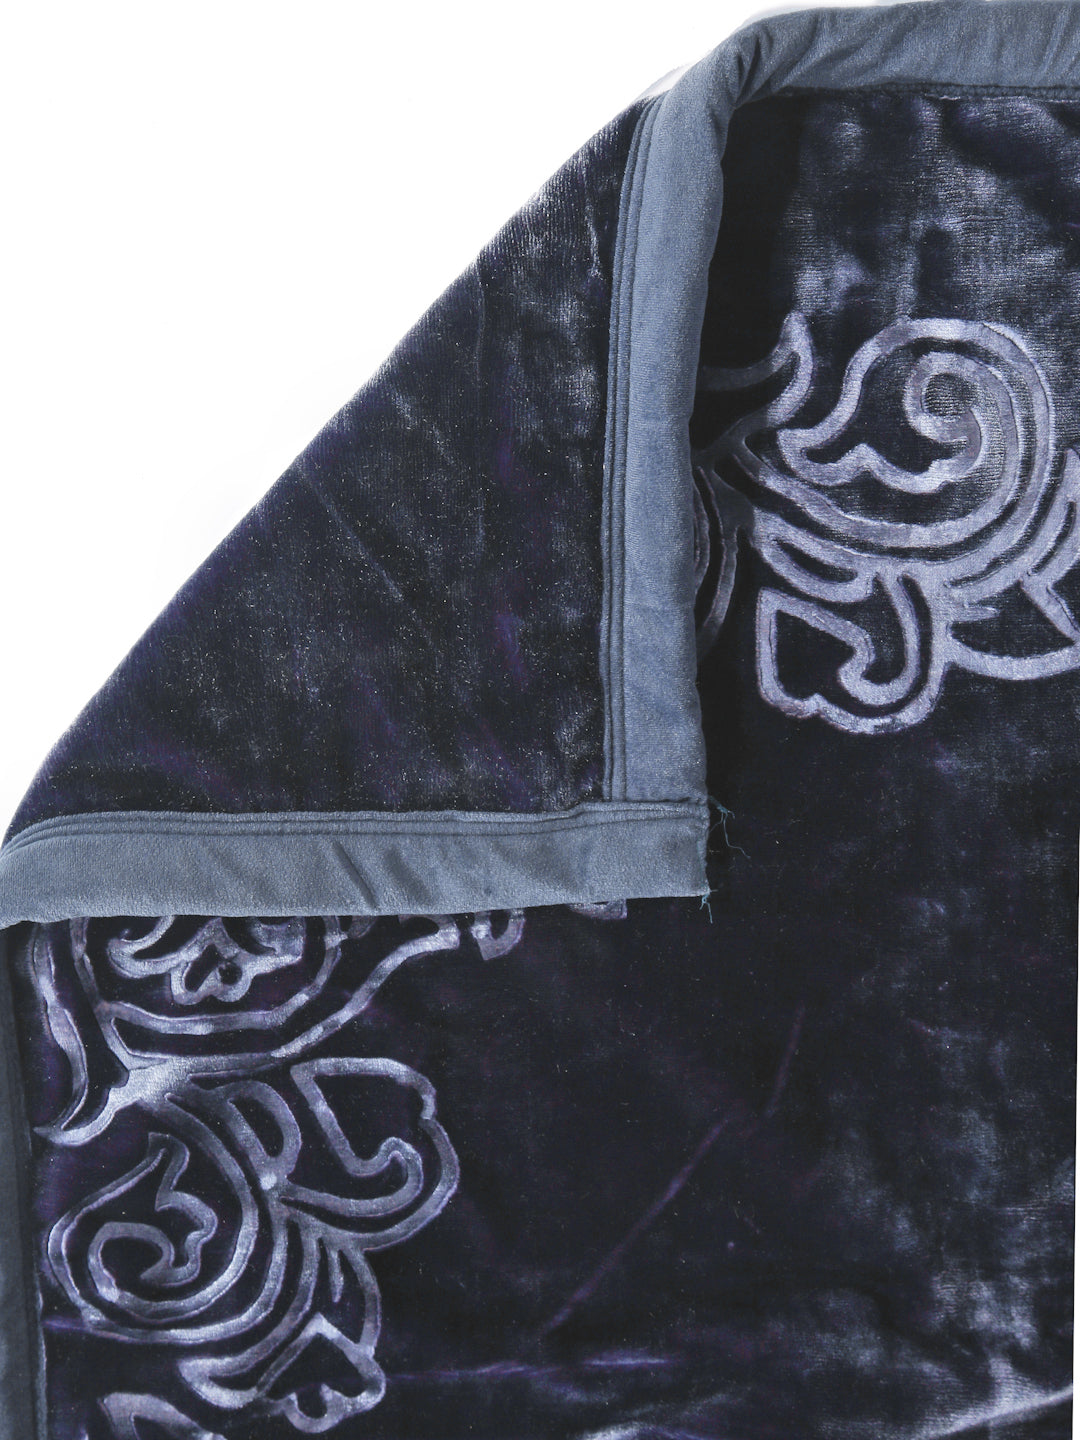 Arrabi Violet Floral Wool Blend 950 GSM Full Size Double Bed Blanket (200 X 205 cm)